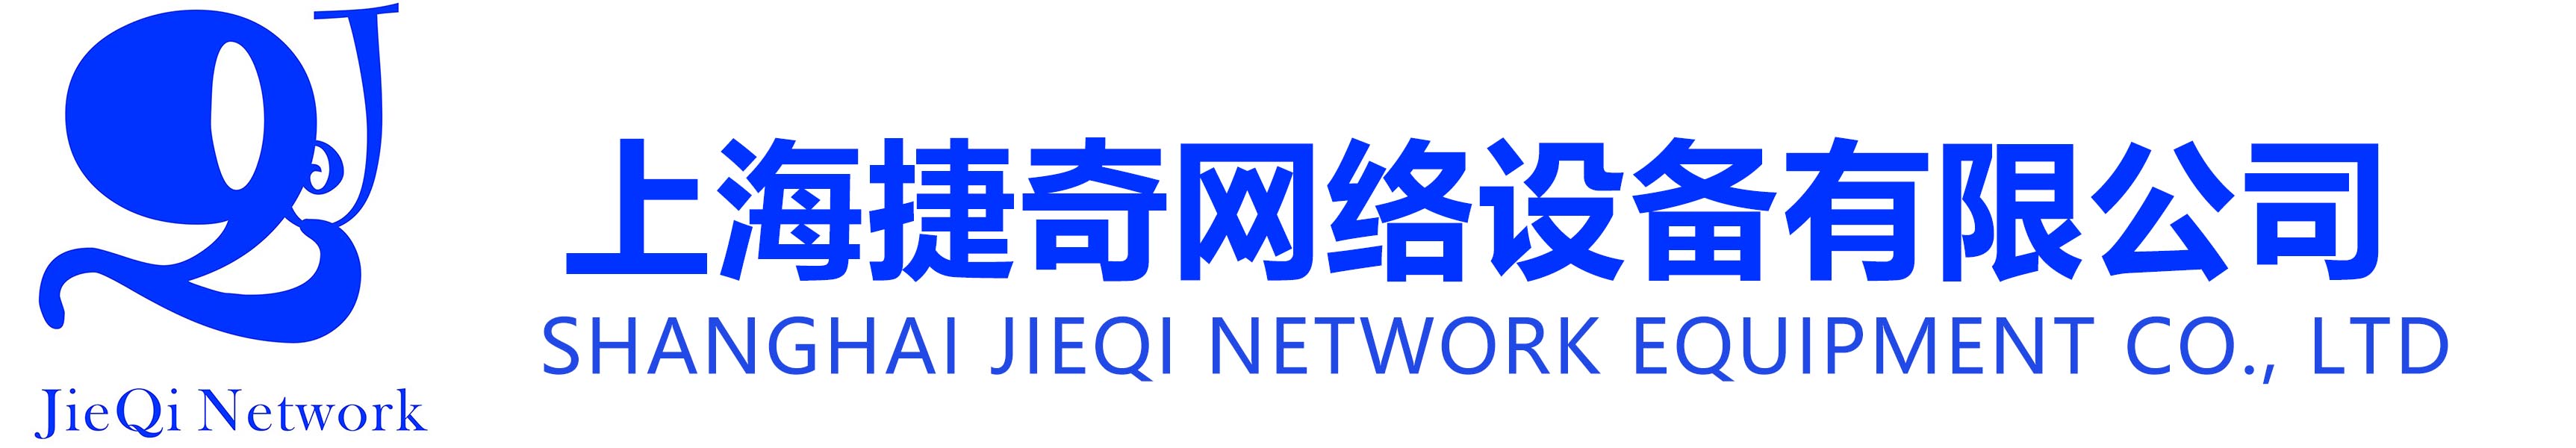 上海捷奇网络设备有限公司